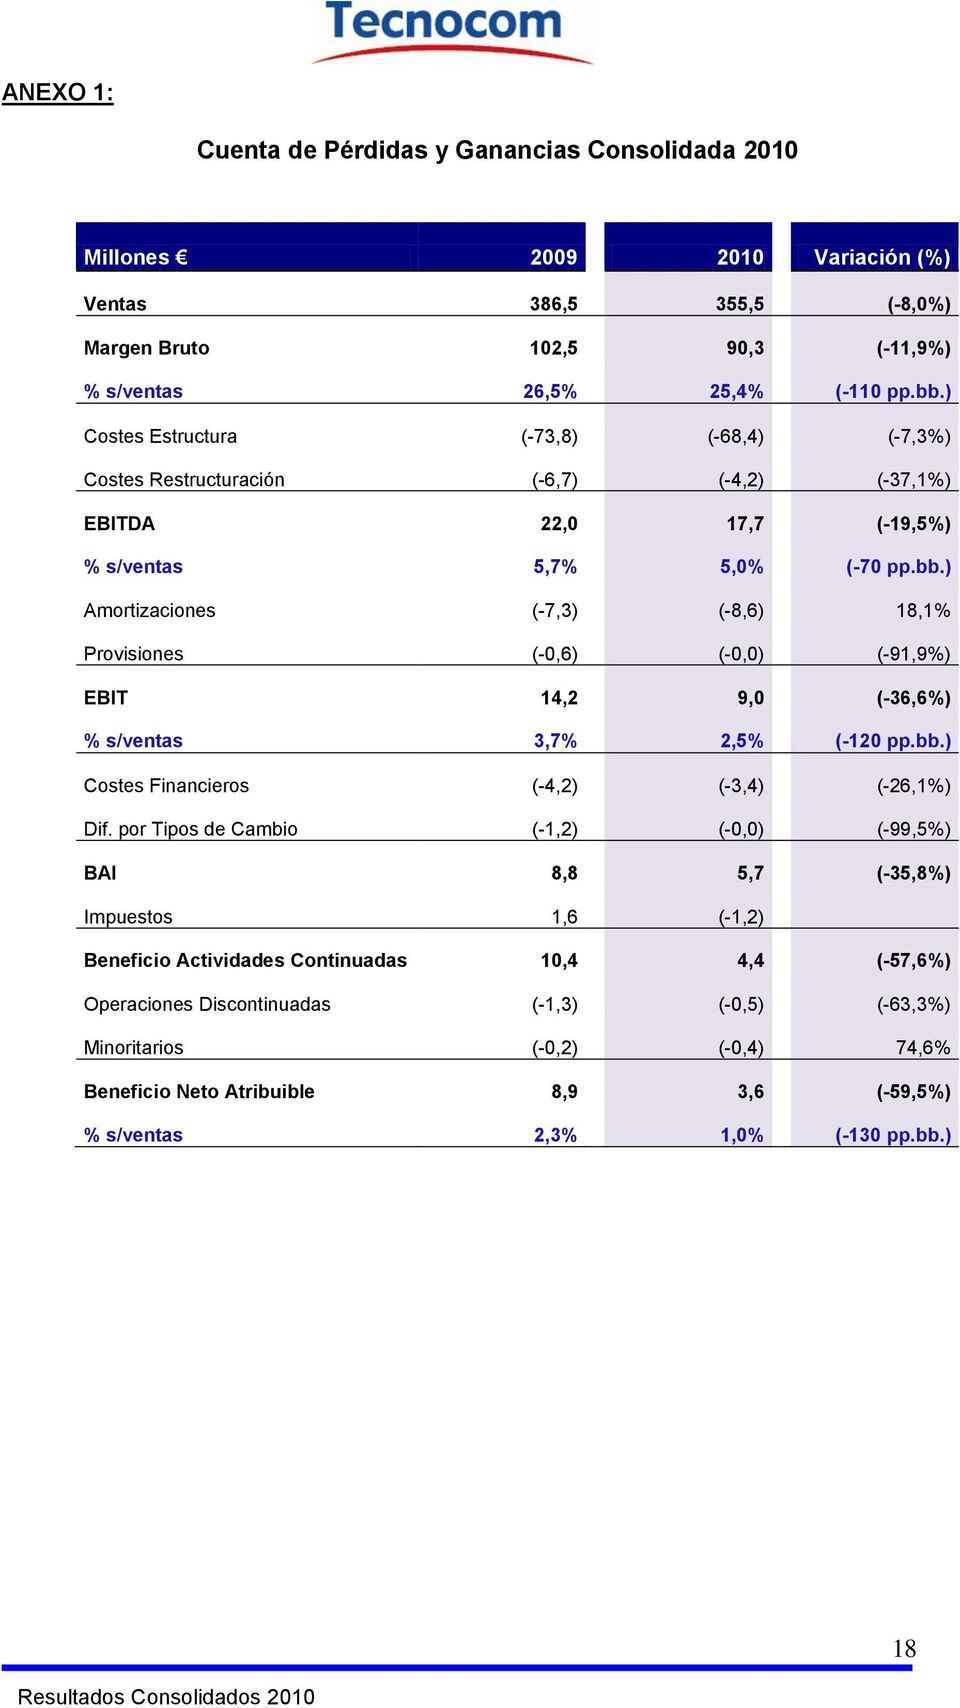 ) Amortizaciones (-7,3) (-8,6) 18,1% Provisiones (-0,6) (-0,0) (-91,9%) EBIT 14,2 9,0 (-36,6%) % s/ventas 3,7% 2,5% (-120 pp.bb.) Costes Financieros (-4,2) (-3,4) (-26,1%) Dif.